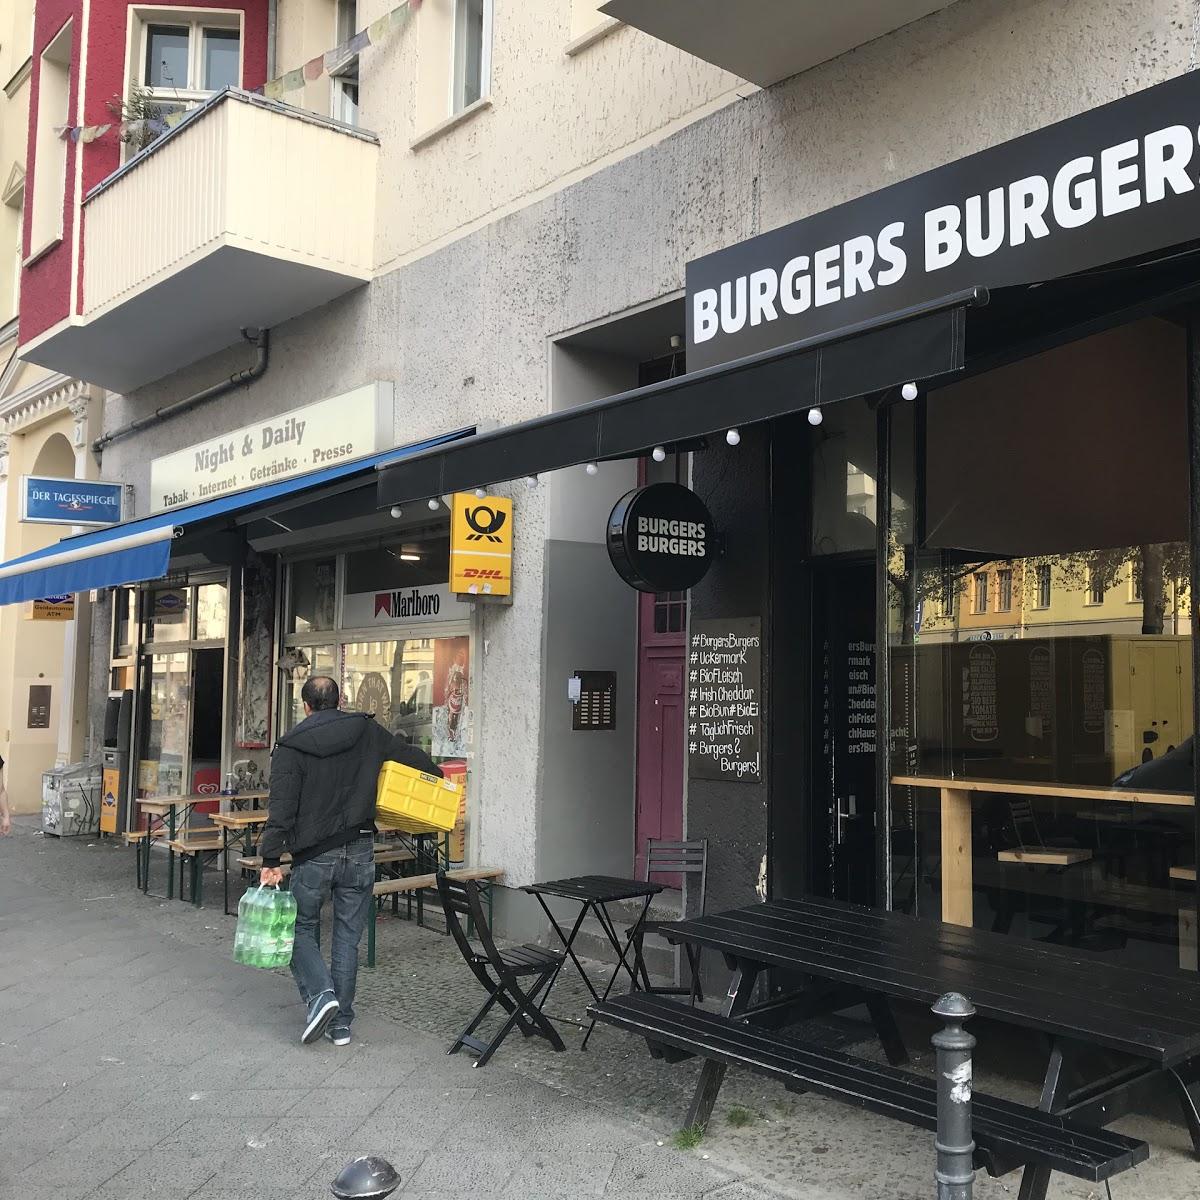 Restaurant "Burgers Burgers - Organic Burgers" in Berlin